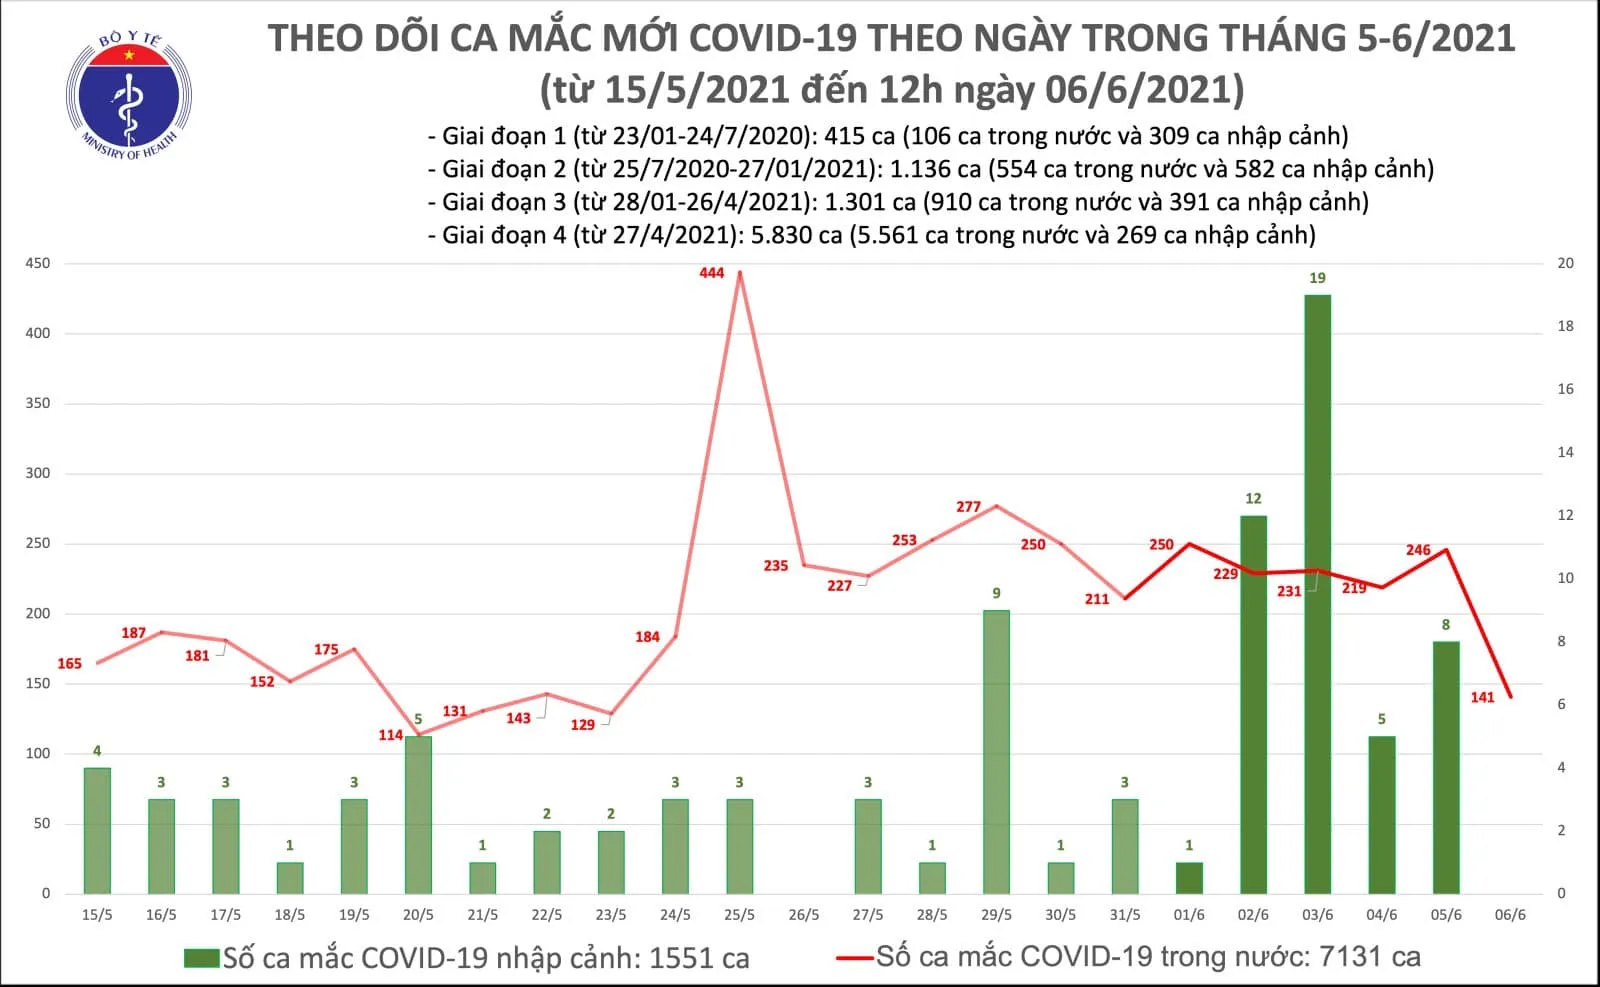 Covid-19 tại Việt Nam: Trưa 6/6, thêm 102 ca mắc COVID-19 trong nước